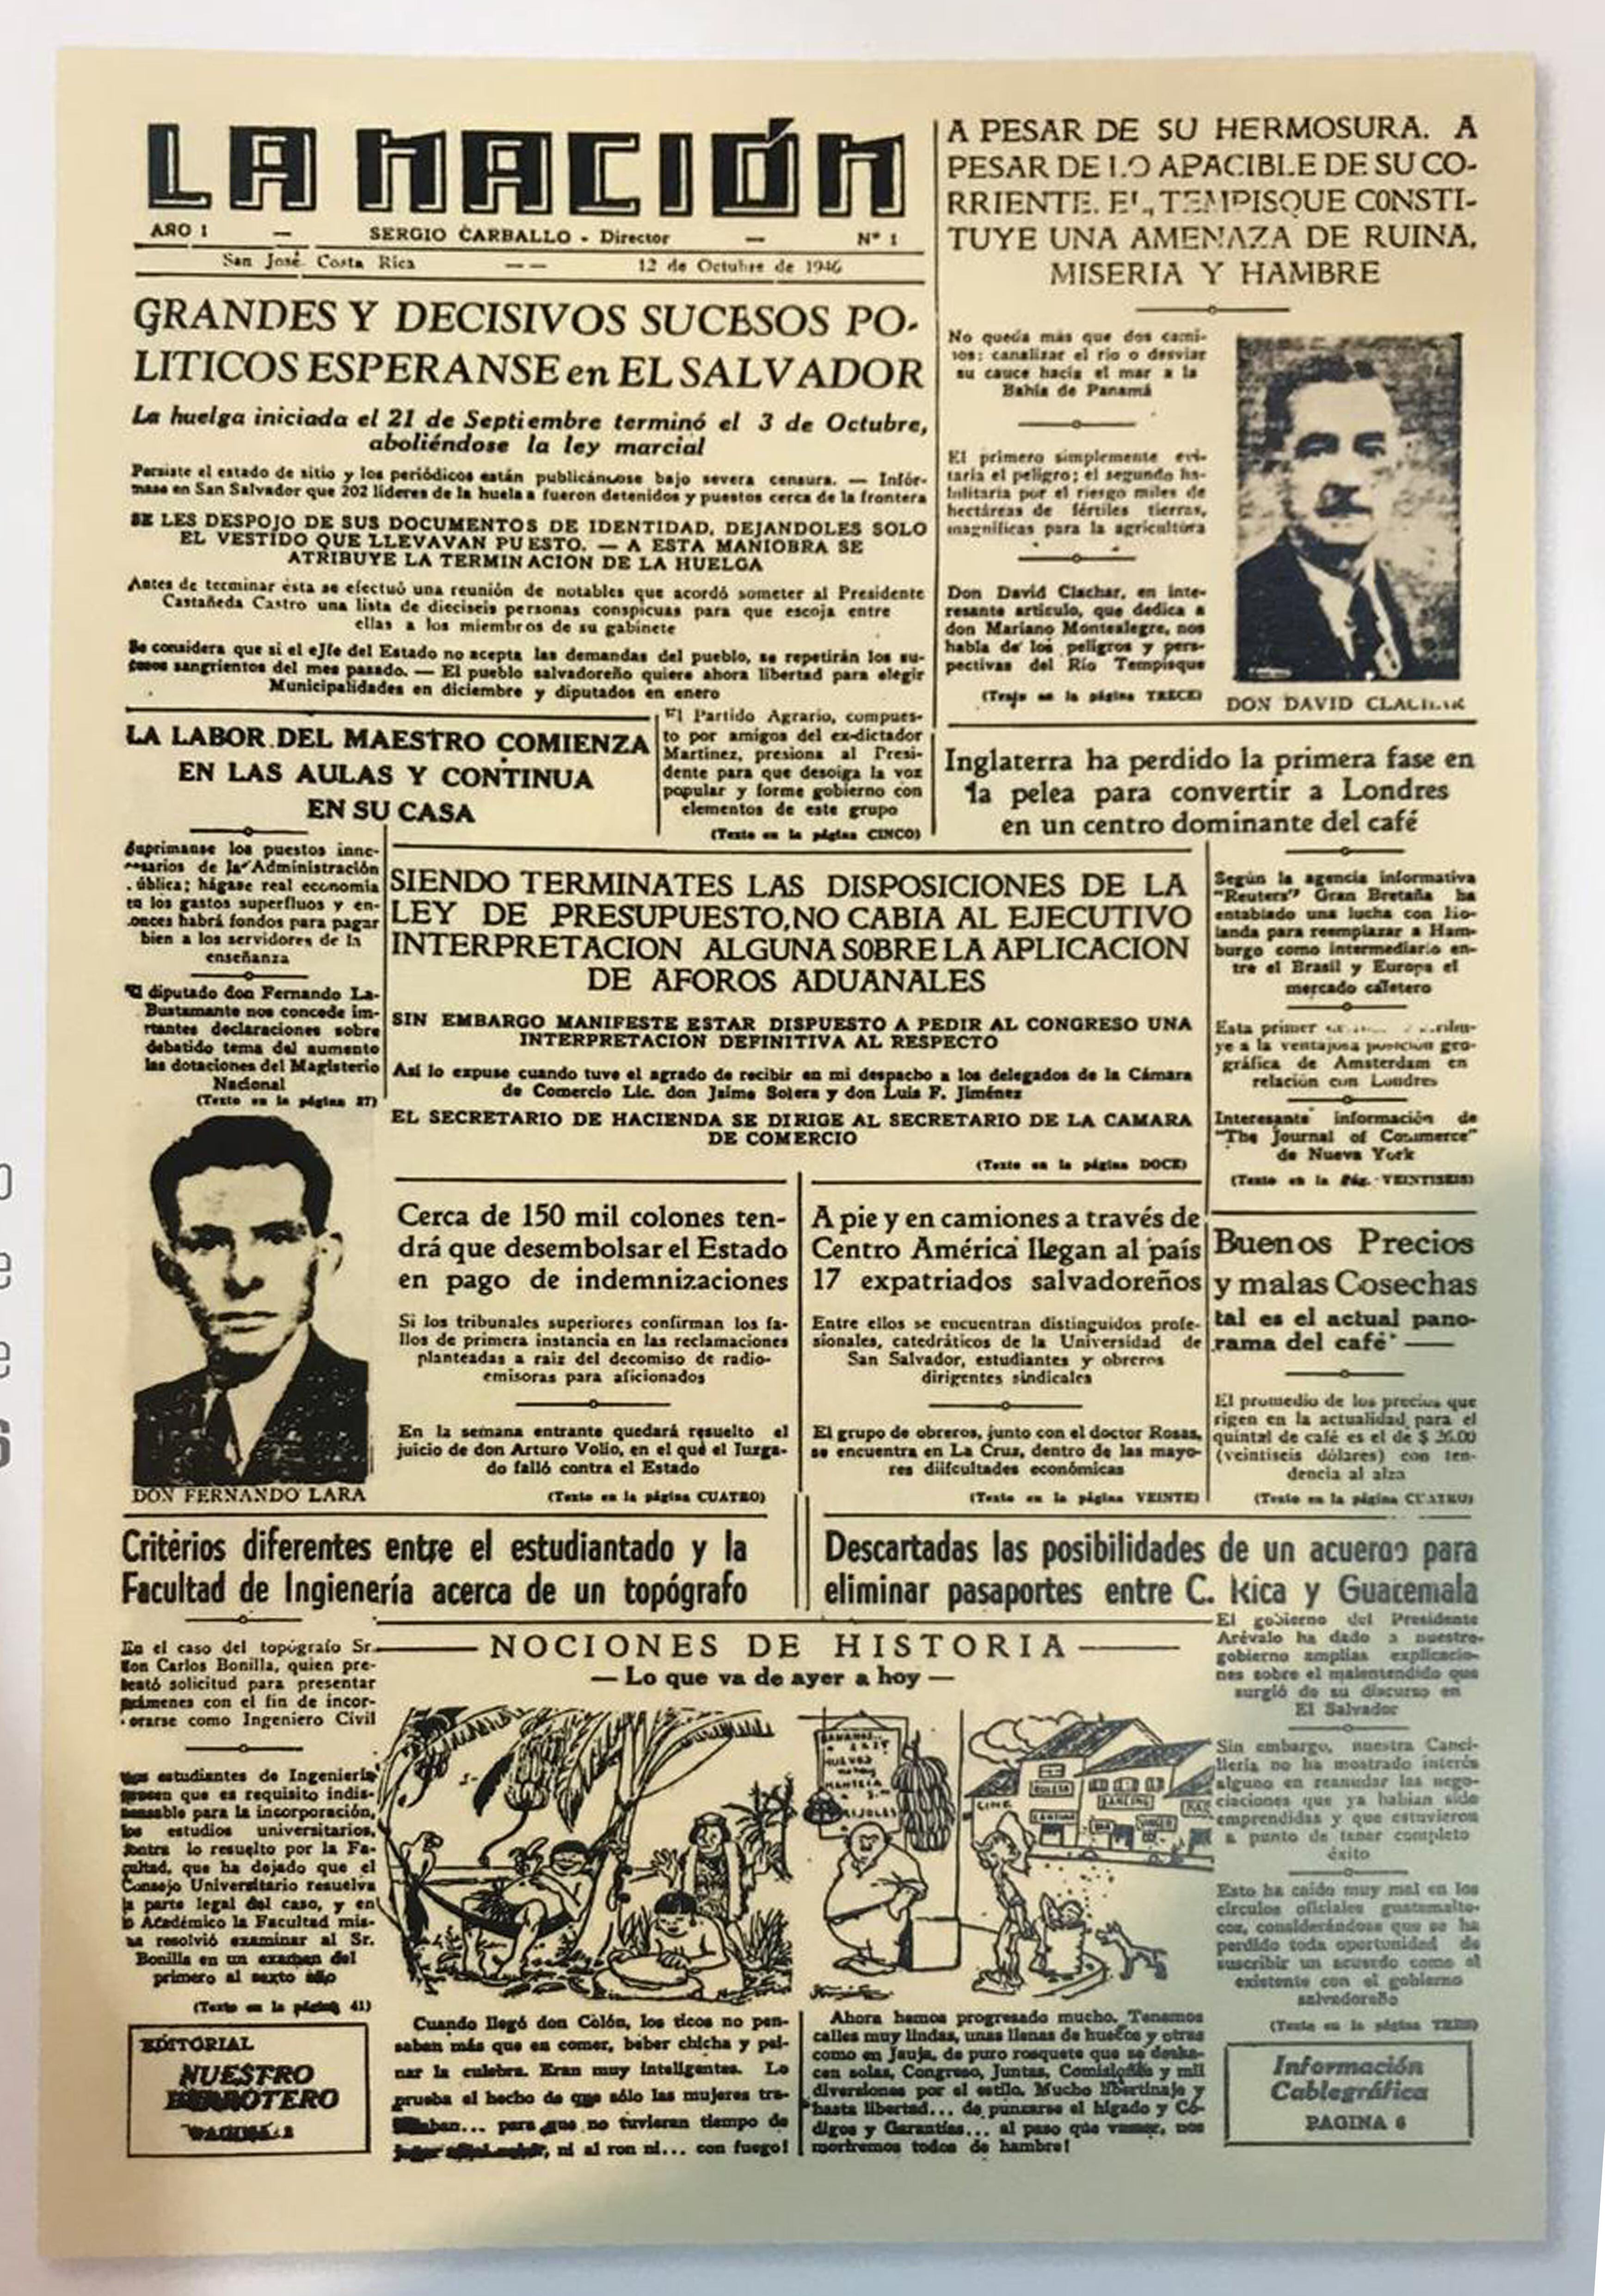 Hace 76 años esta fue nuestra primera portada en La Nación. El periódico se comenzó a vender al pregón en la esquina del entonces Teatro Raventós (hoy Melico Salazar) a ¢0,10 el ejemplar.